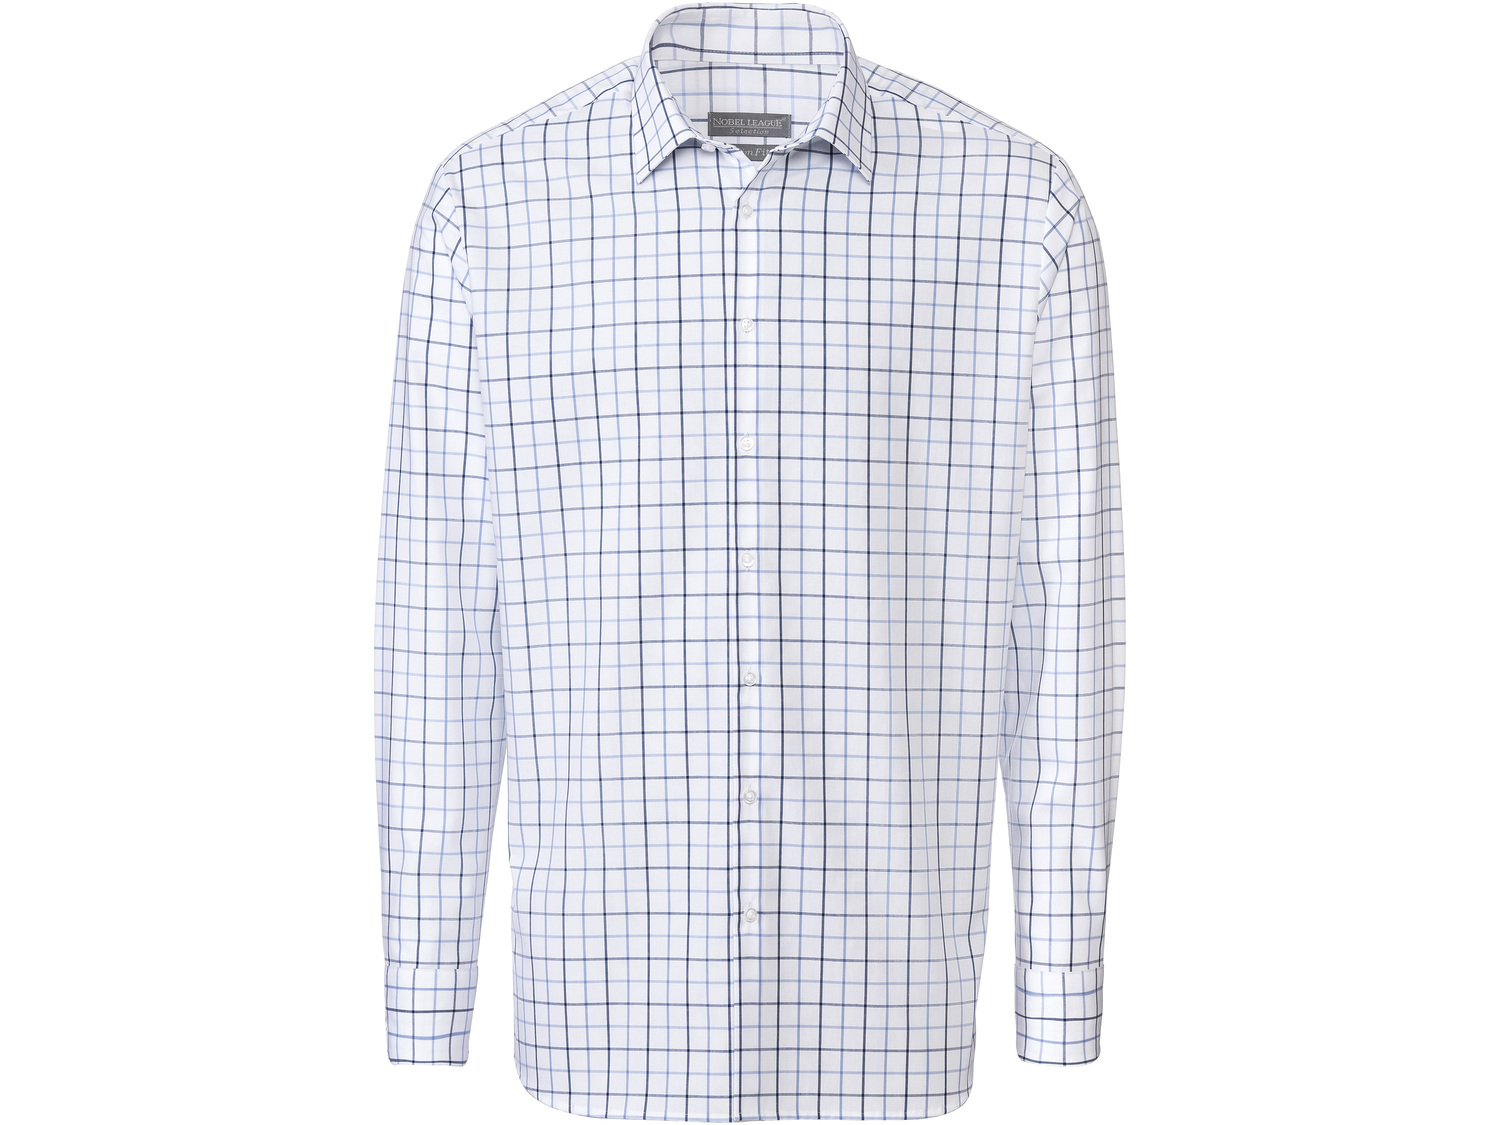 Koszula biznesowa męska , cena 49,99 PLN 
- rozmiary: 39-44
- taliowany krój
- ...